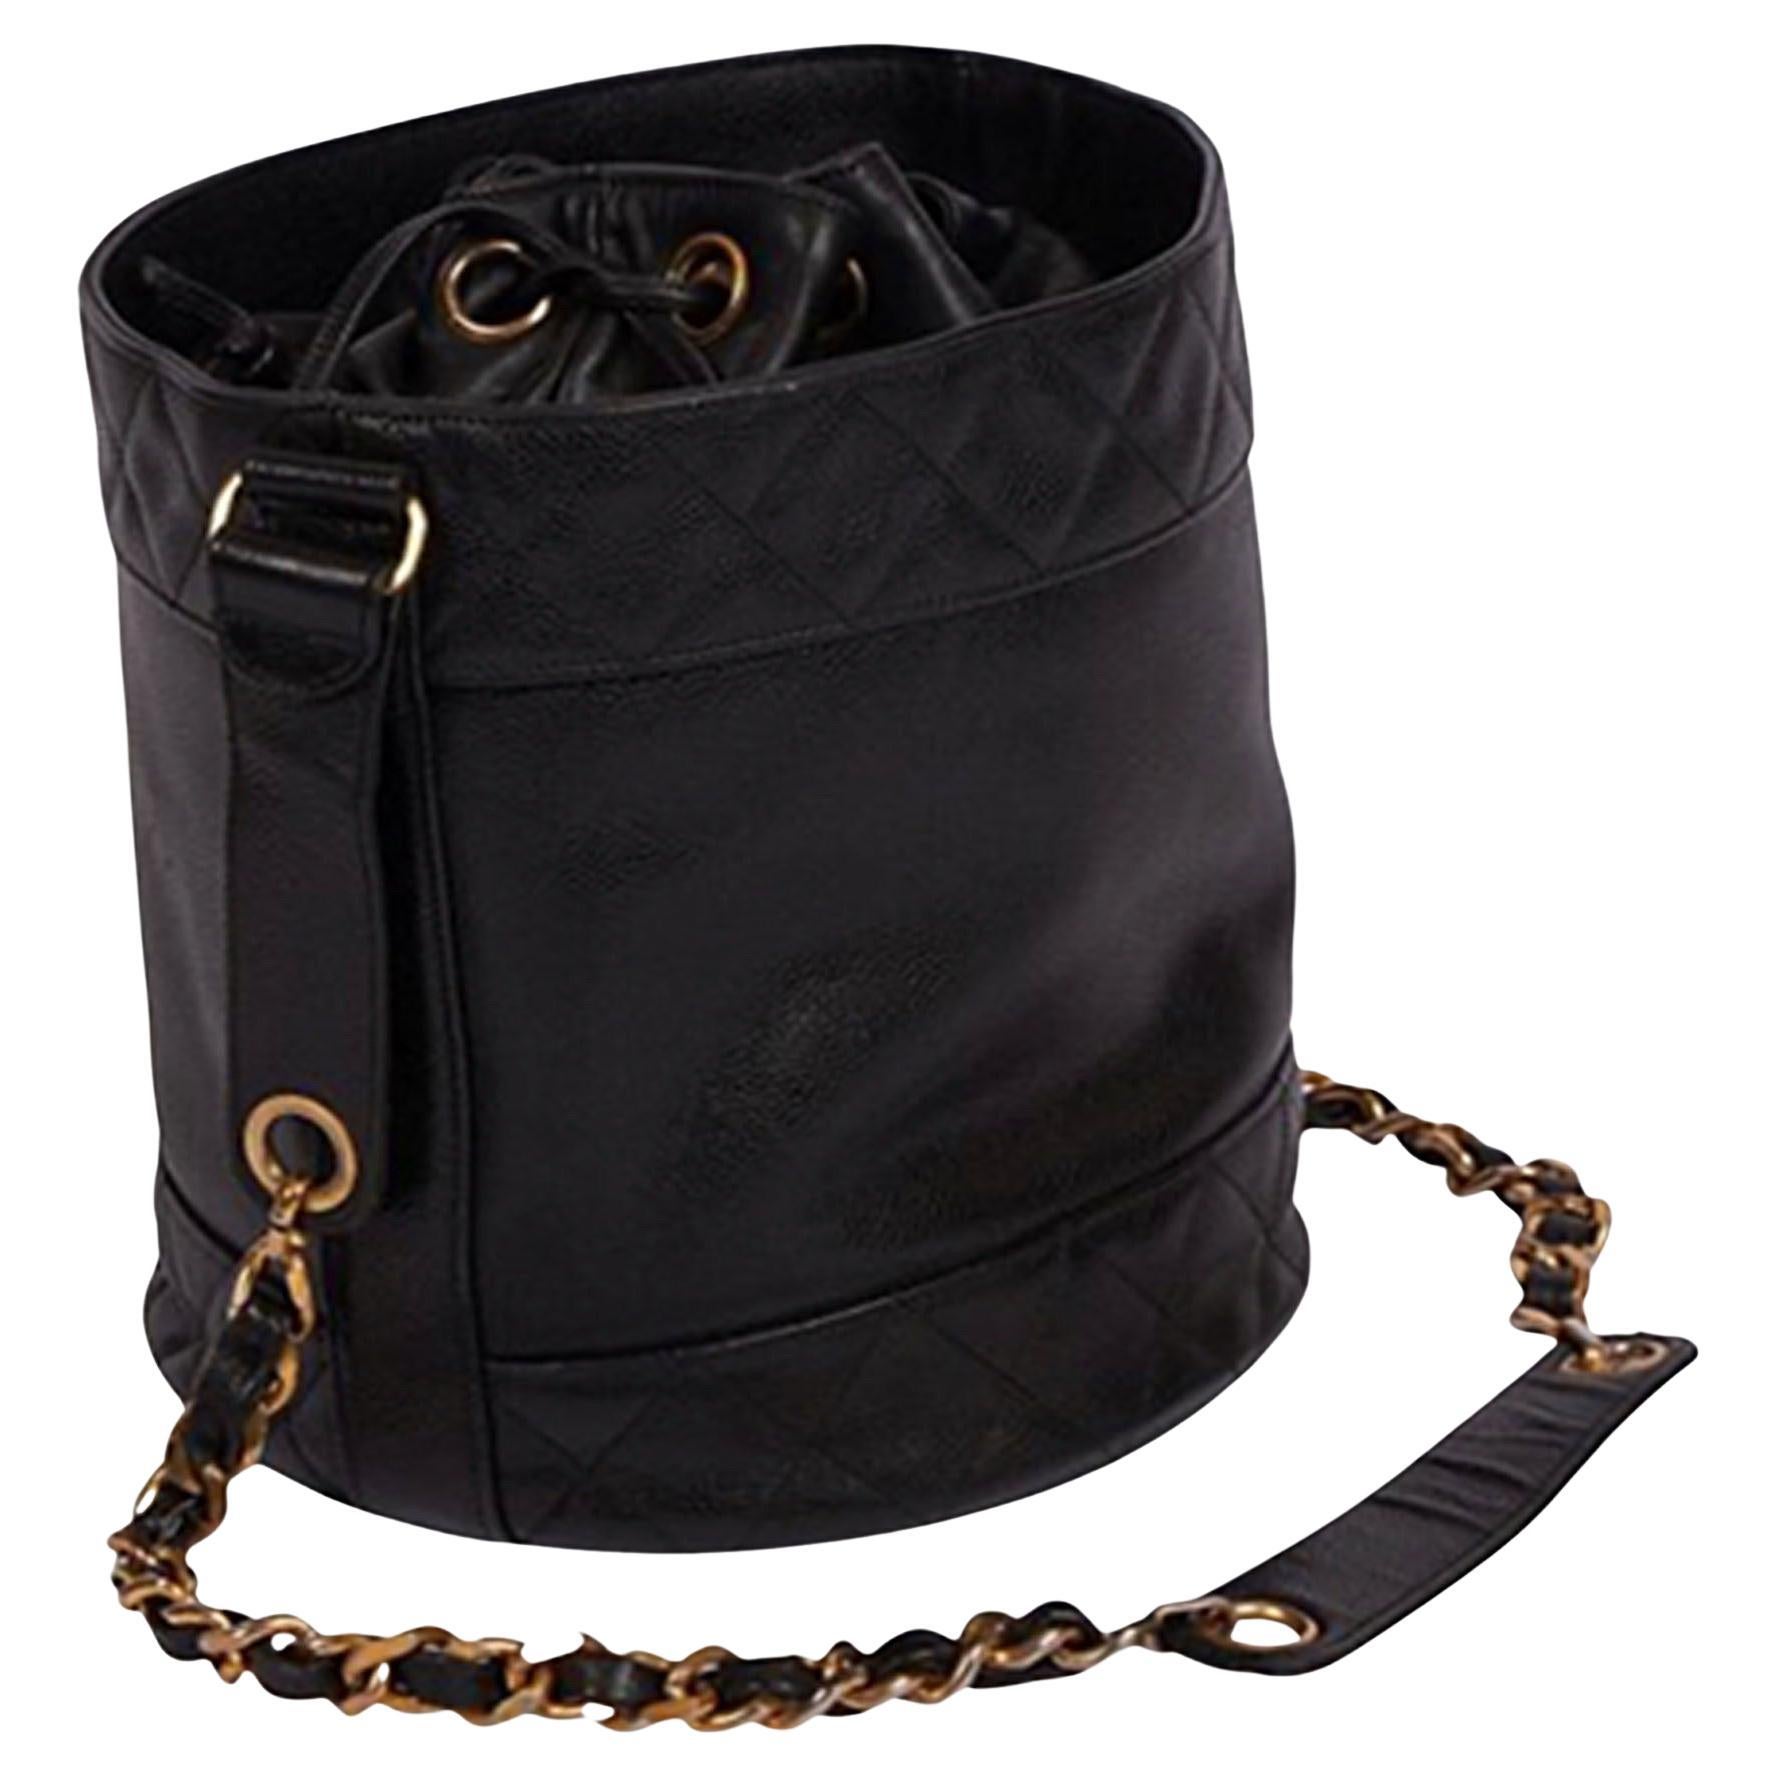 Chanel 1991 Black Caviar Leather Vintage Drawstring Drum Shaped Shoulder Bag For Sale 2